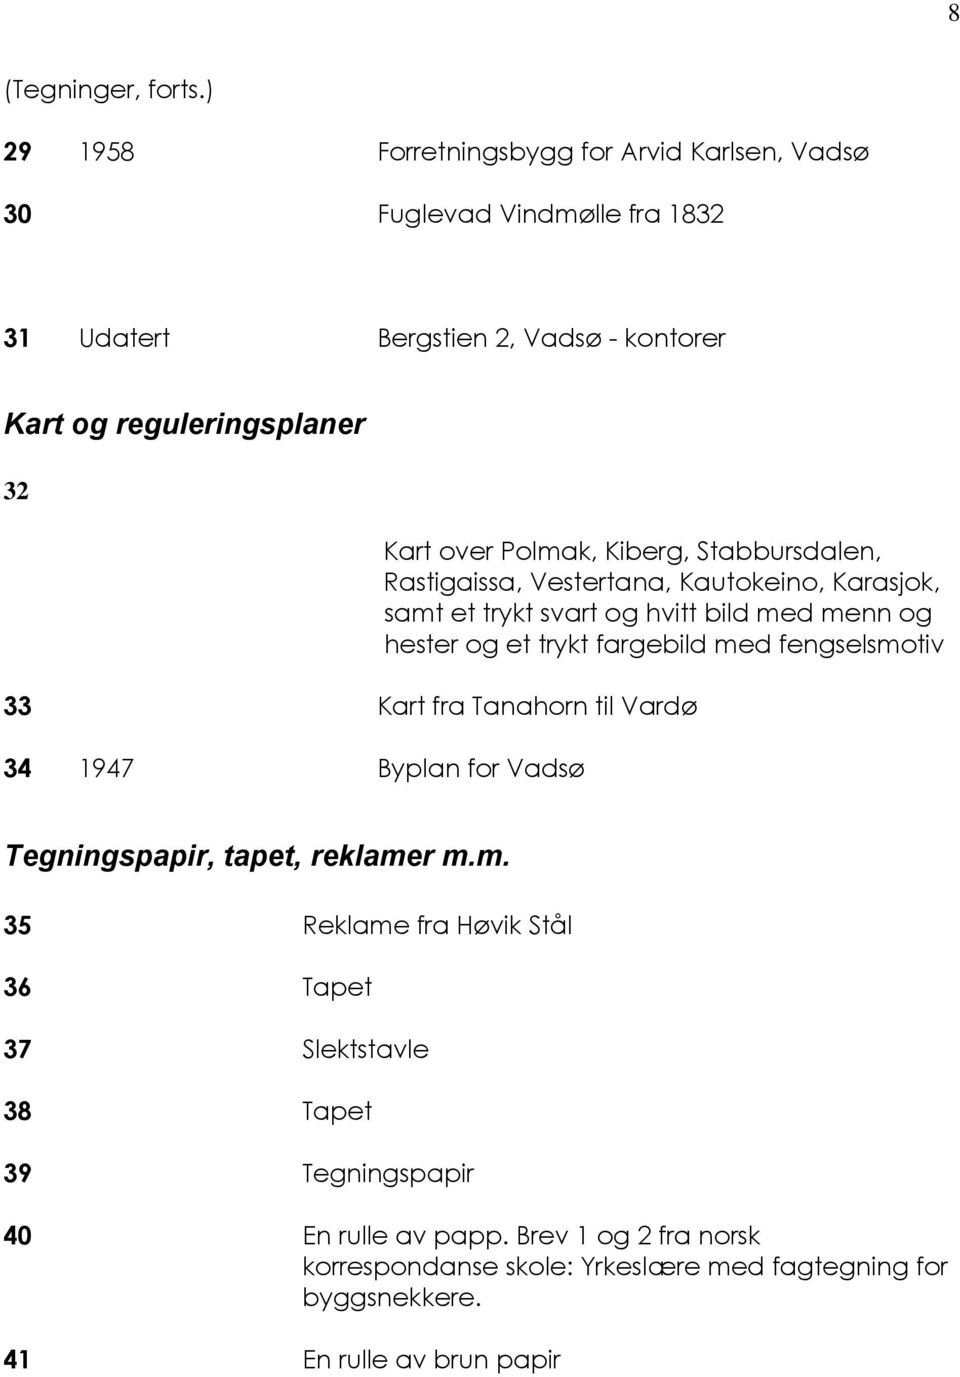 Polmak, Kiberg, Stabbursdalen, Rastigaissa, Vestertana, Kautokeino, Karasjok, samt et trykt svart og hvitt bild med menn og hester og et trykt fargebild med